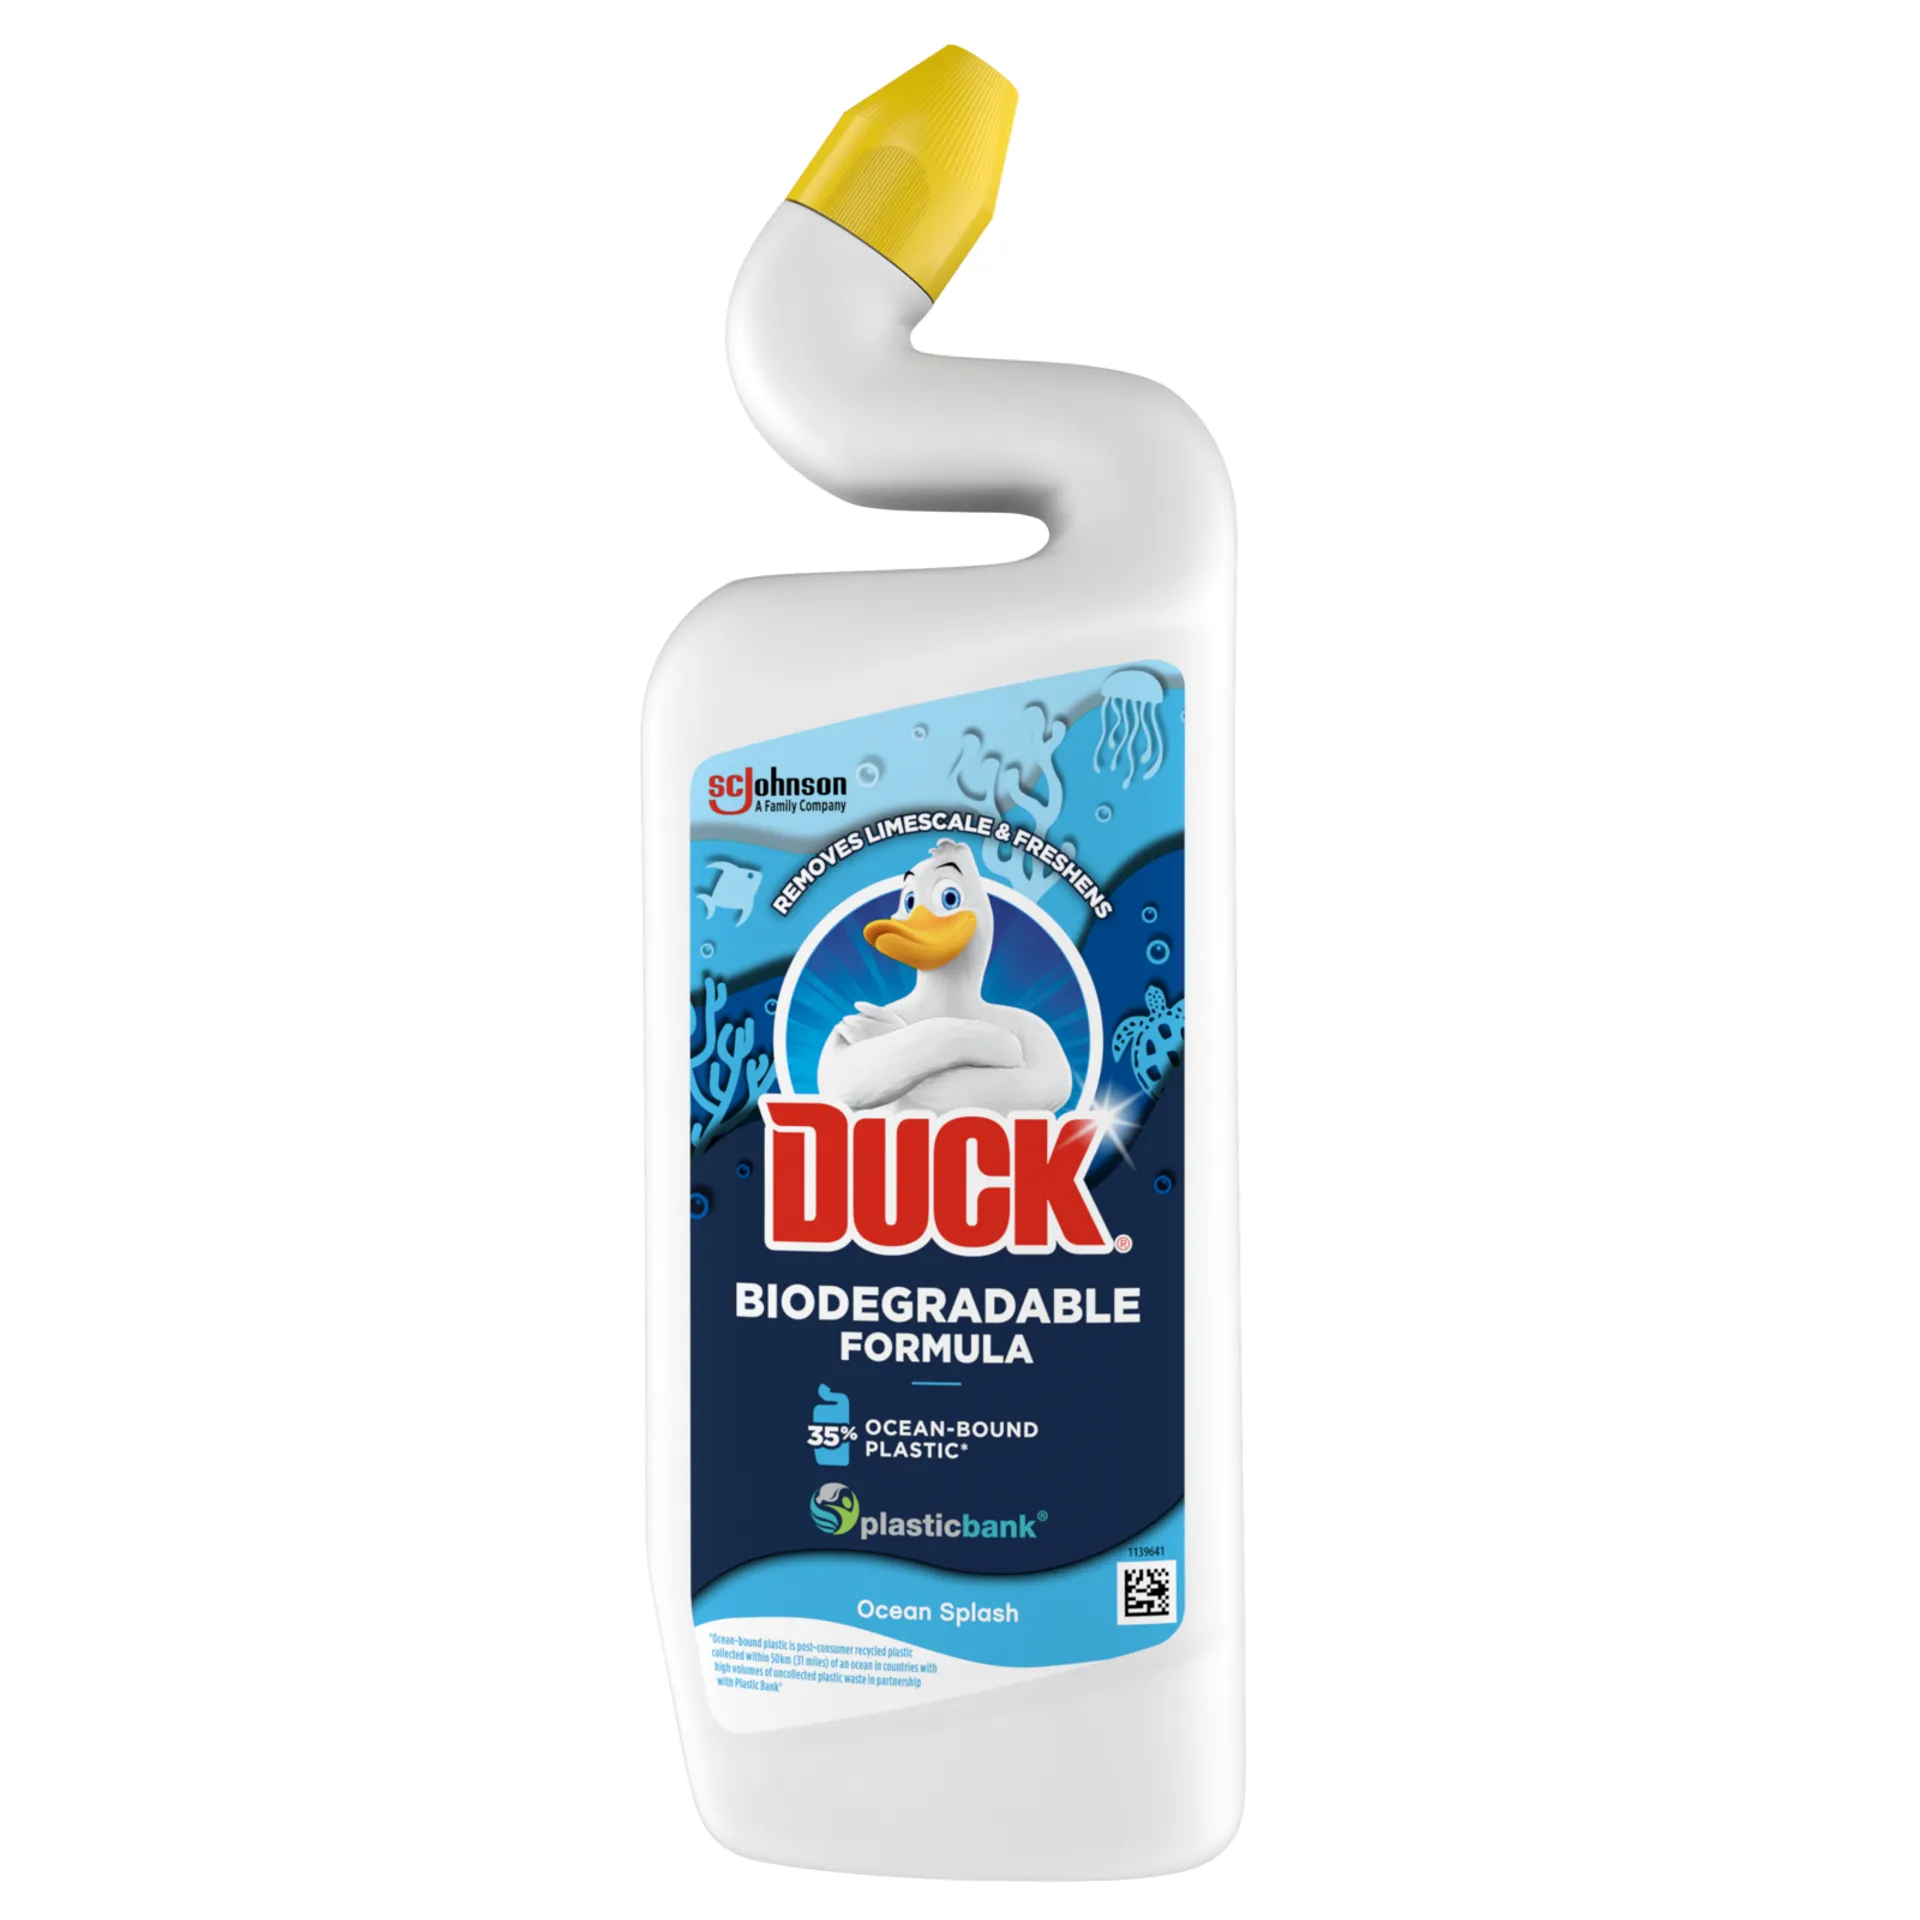 Duck Ocean Splash Biohajoava puhdistusaine  750ml